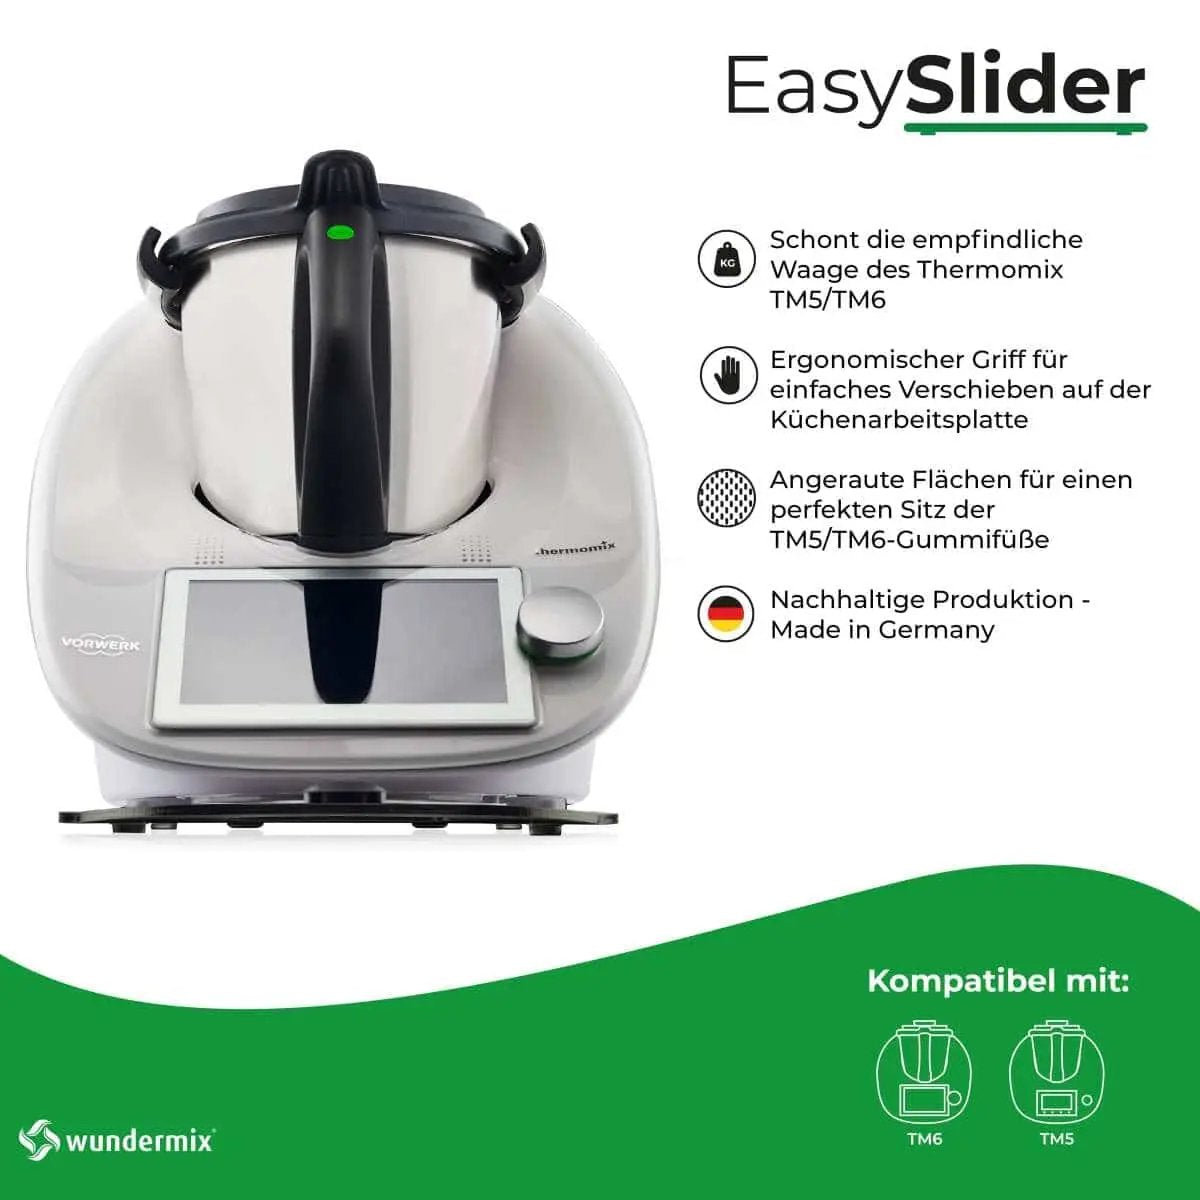 EasySlider® | Mattschwarz | Gleitbrett aus Acrylglas für Thermomix TM6, TM5 - Wundermix GmbH